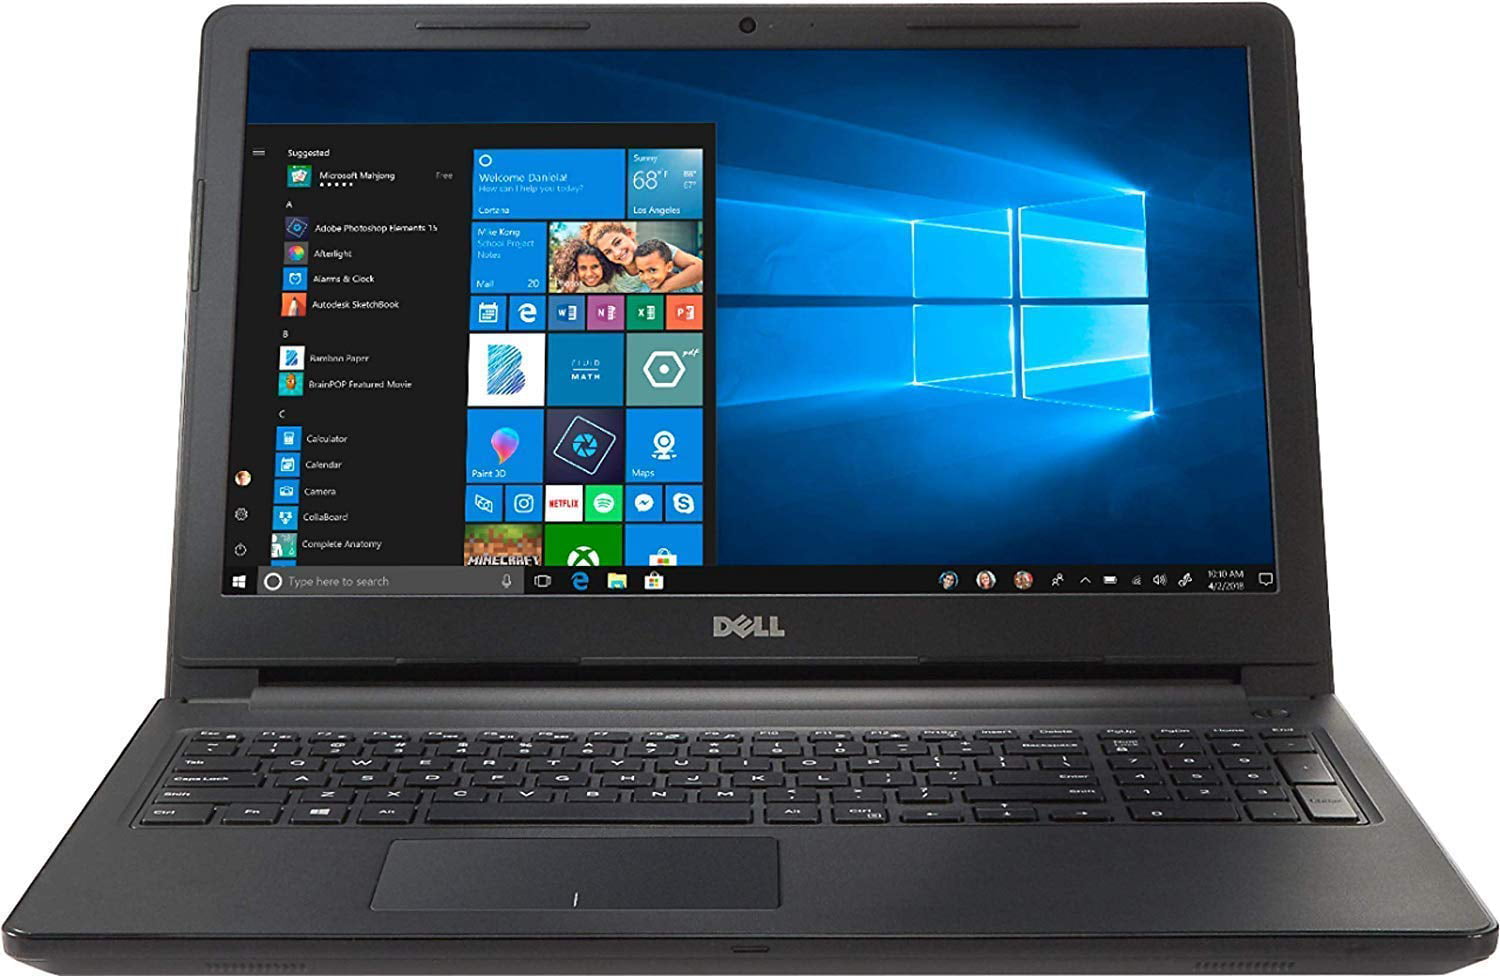 Dell Inspiron 15.6inch HD Premium Laptop PC, Intel Dual Core i3